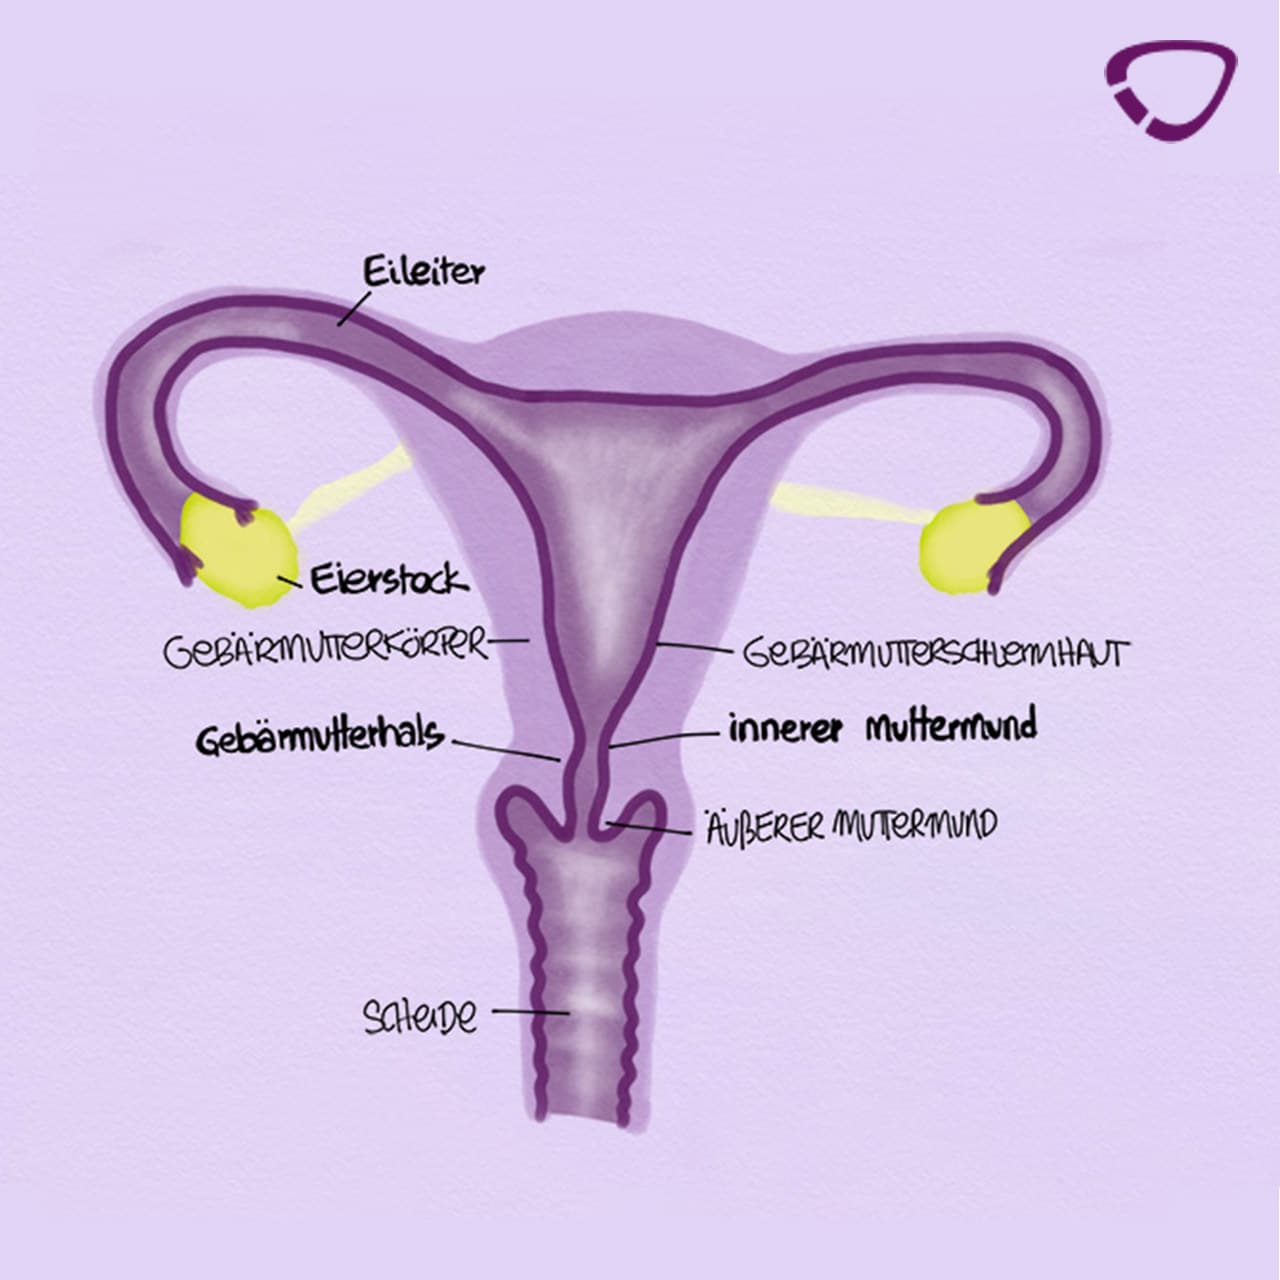 In die gebärmutter eindringen Diaphragma (Empfängnisverhütung)